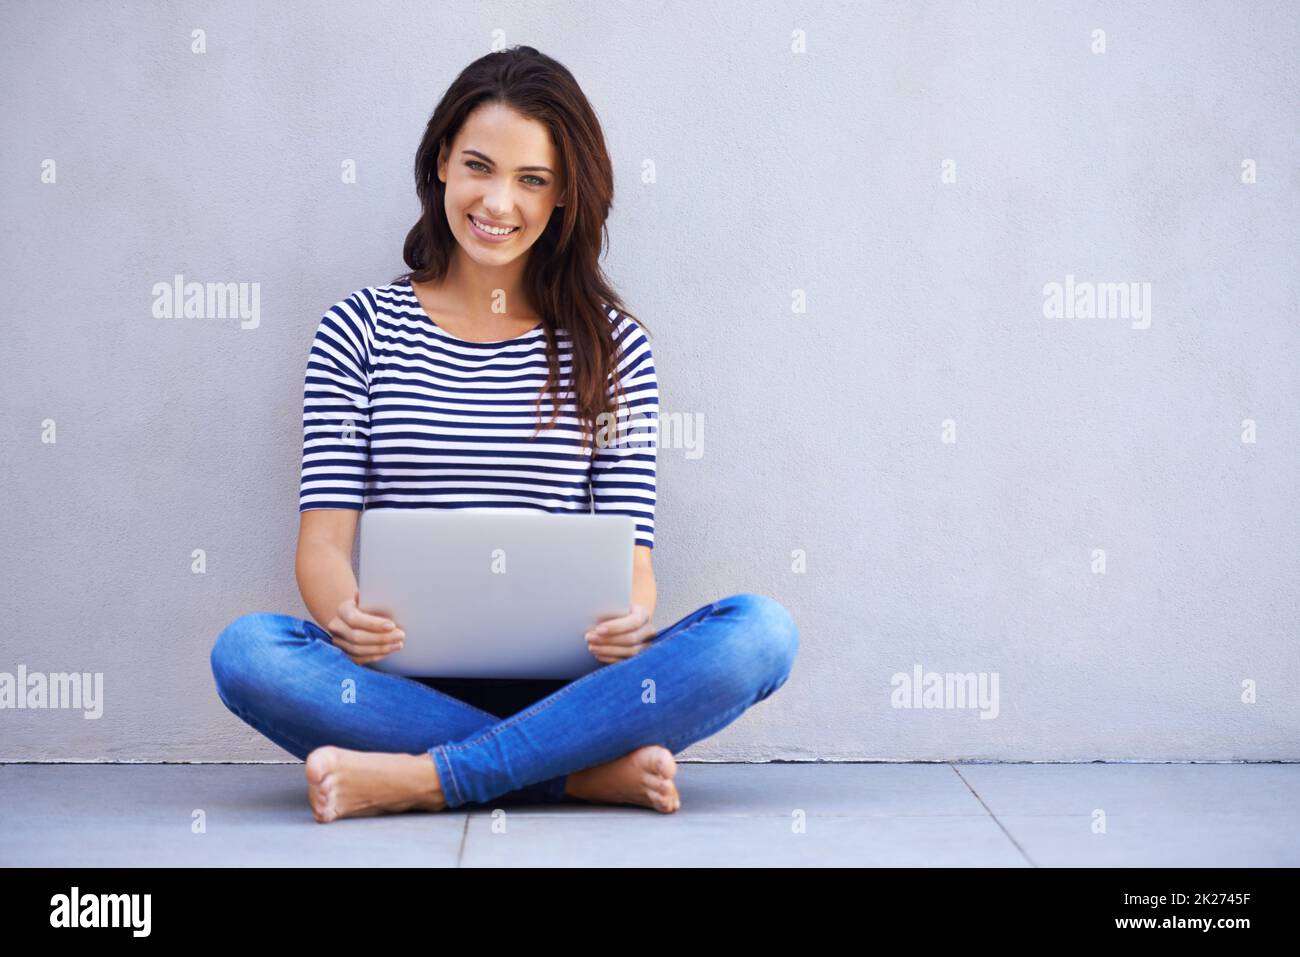 Einfach in der Blog-o-sphere surfen. Ganzkörperaufnahme einer attraktiven jungen Frau, die mit gekreuzten Beinen auf einem Laptop sitzt. Stockfoto